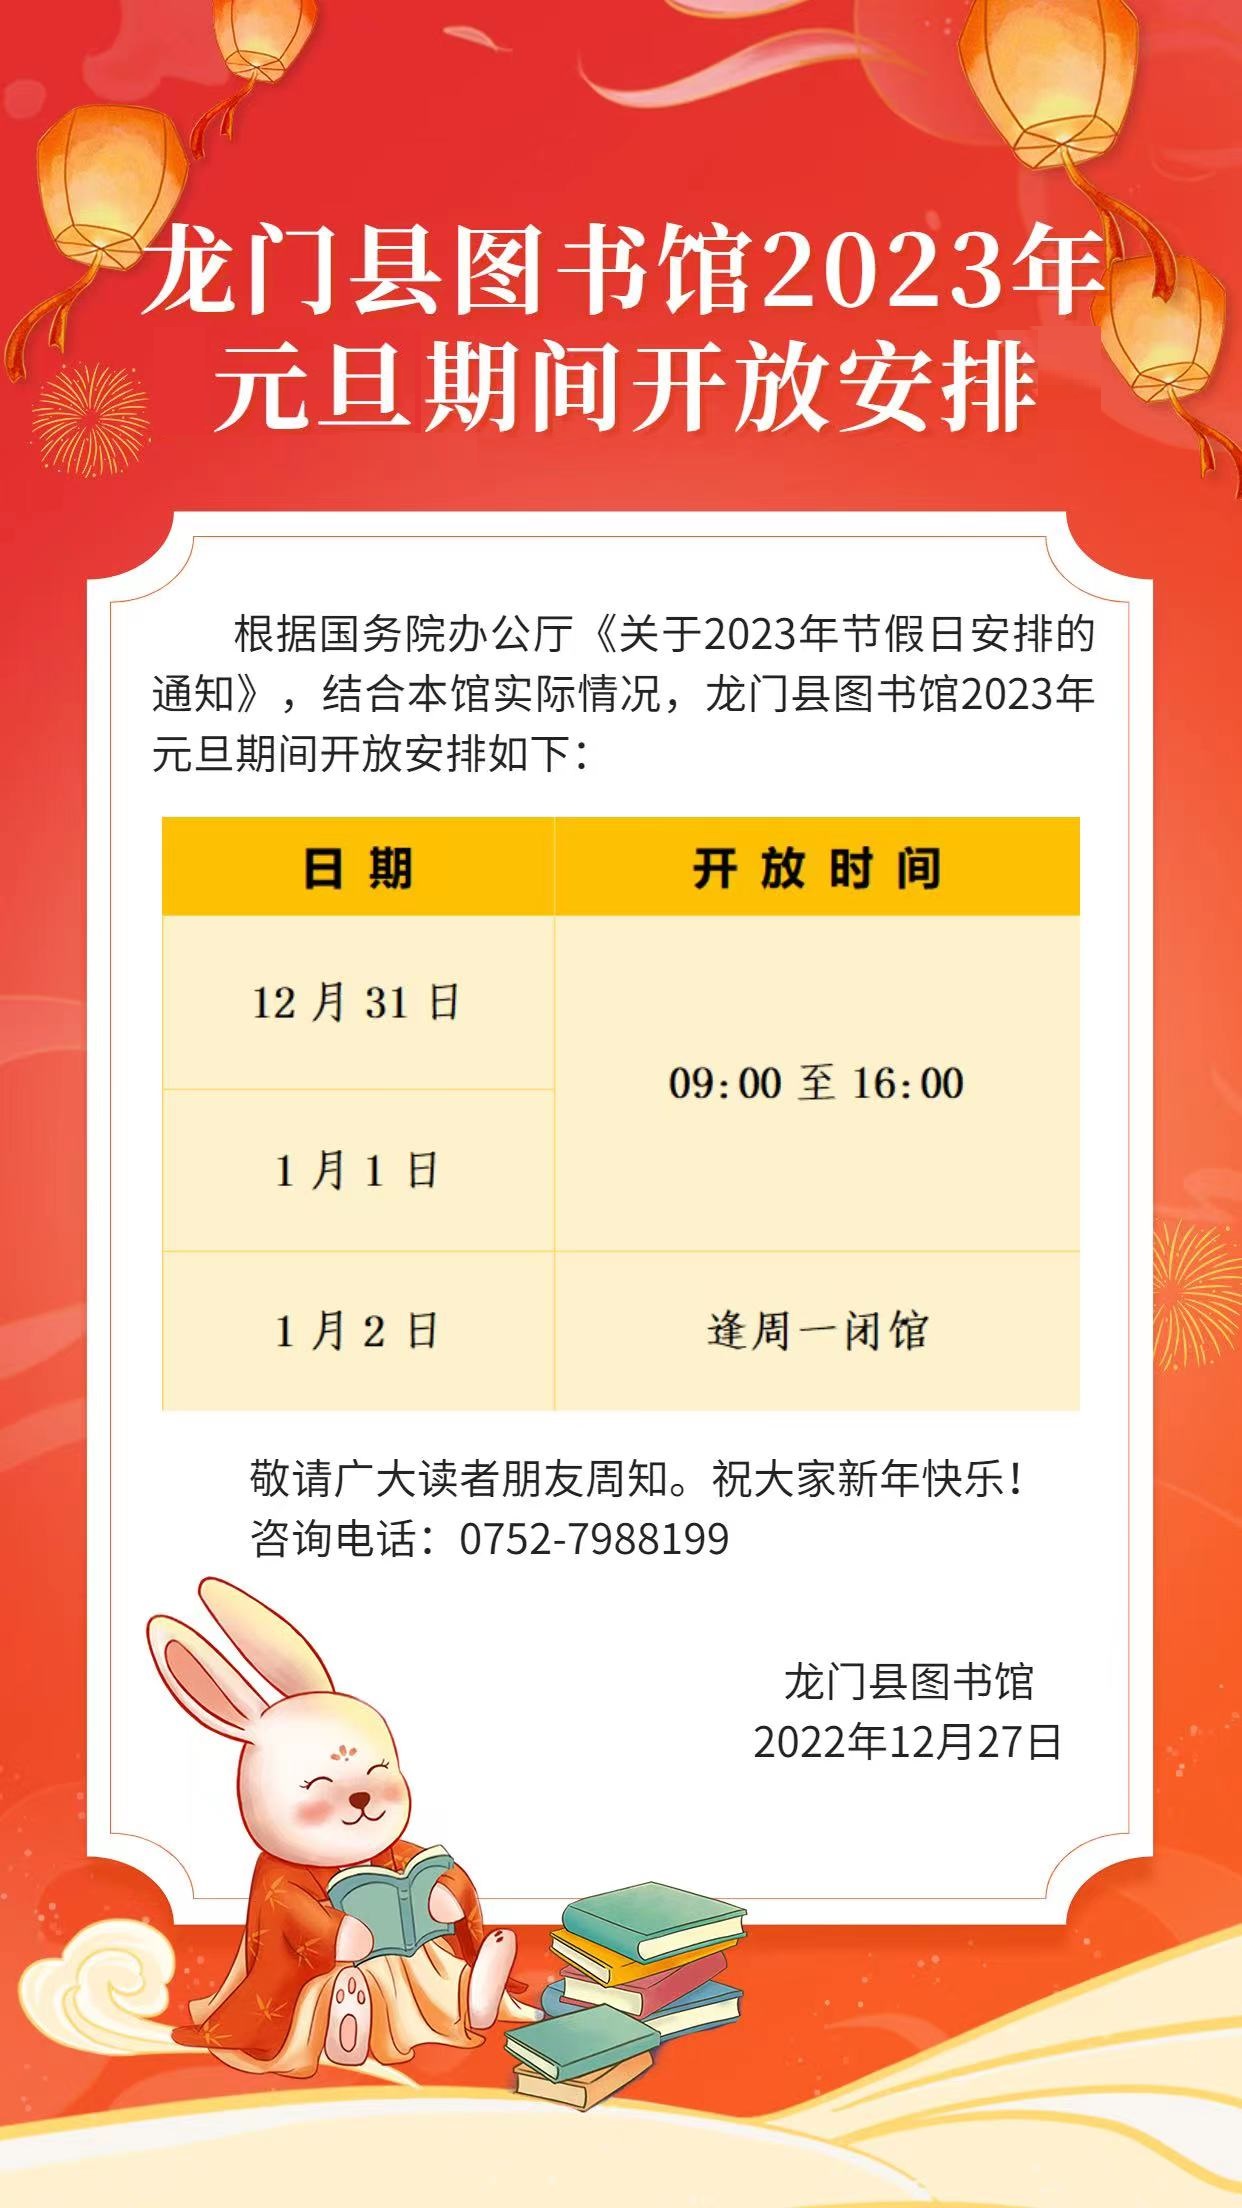 龙门县图书馆2023年元旦期间开放安排